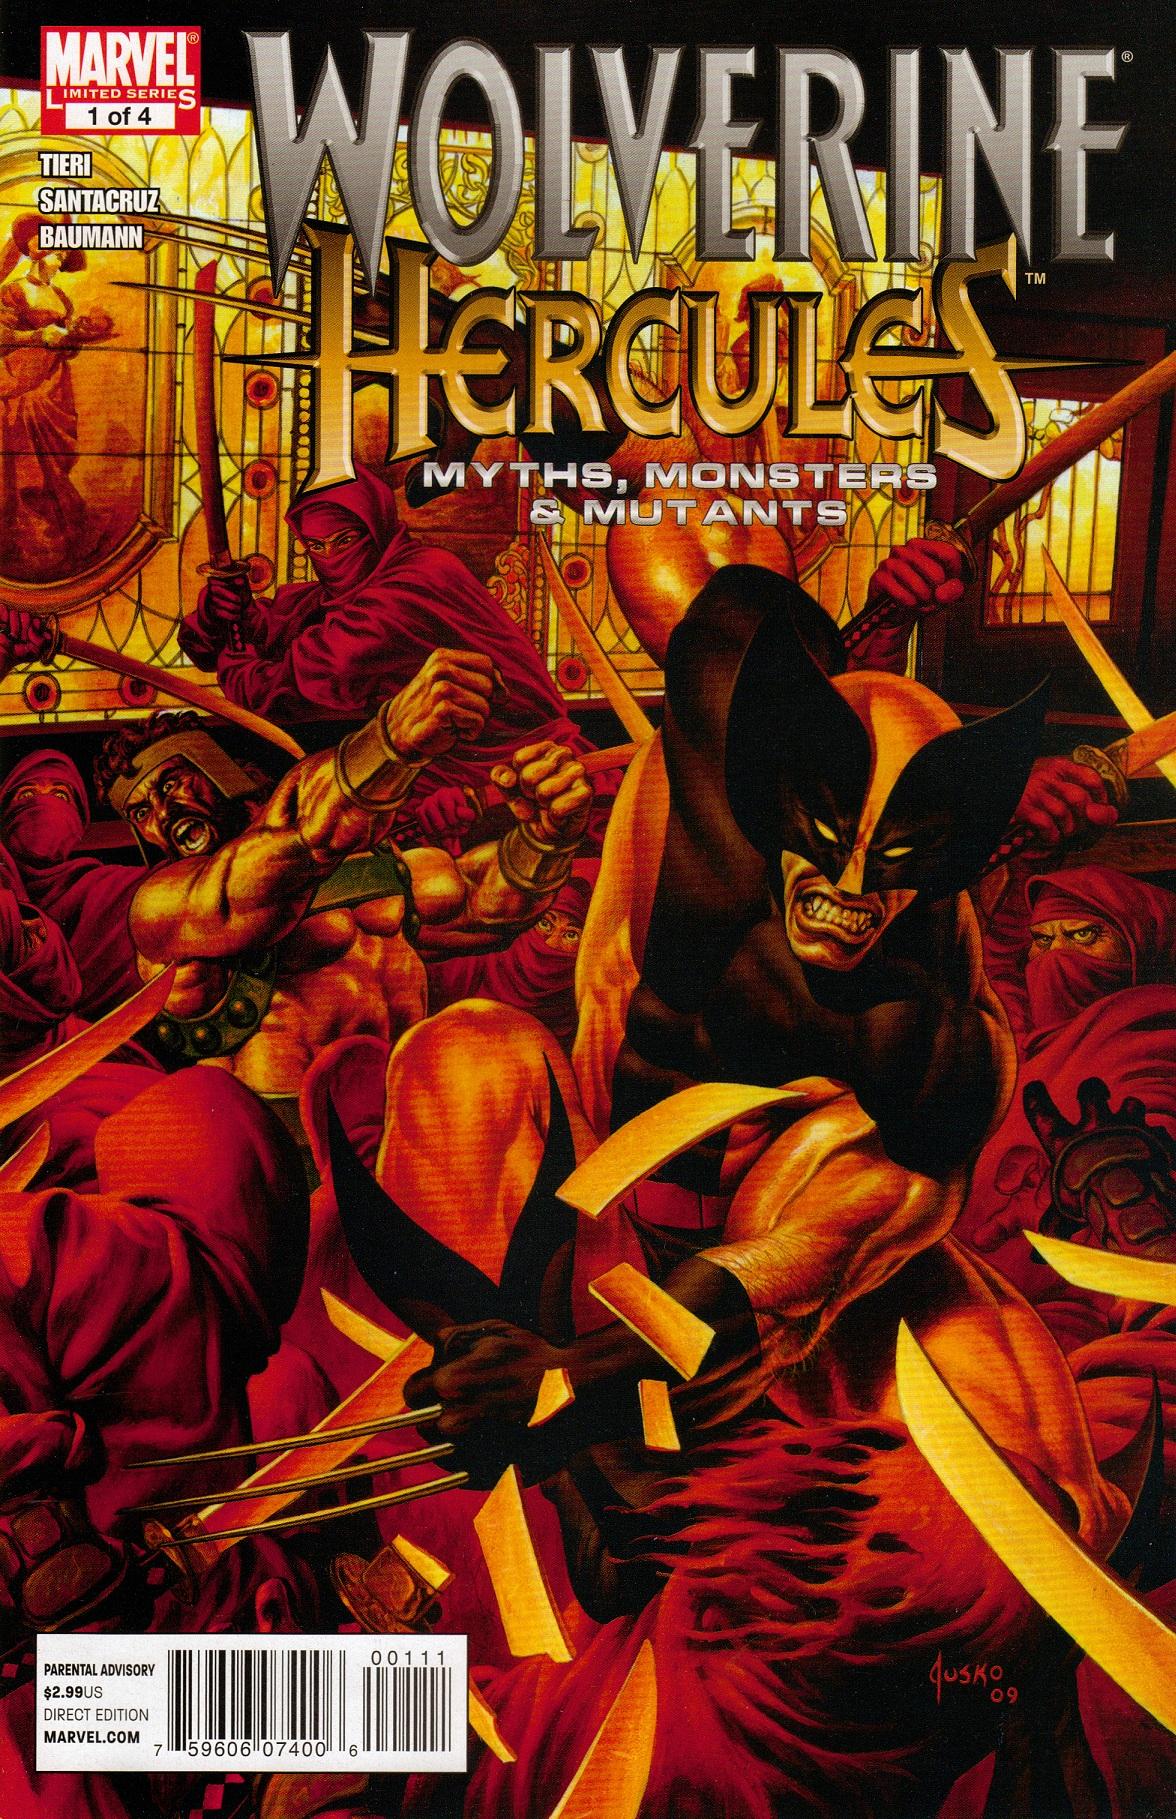 Wolverine/Hercules: Myths, Monsters & Mutants Vol. 1 #1